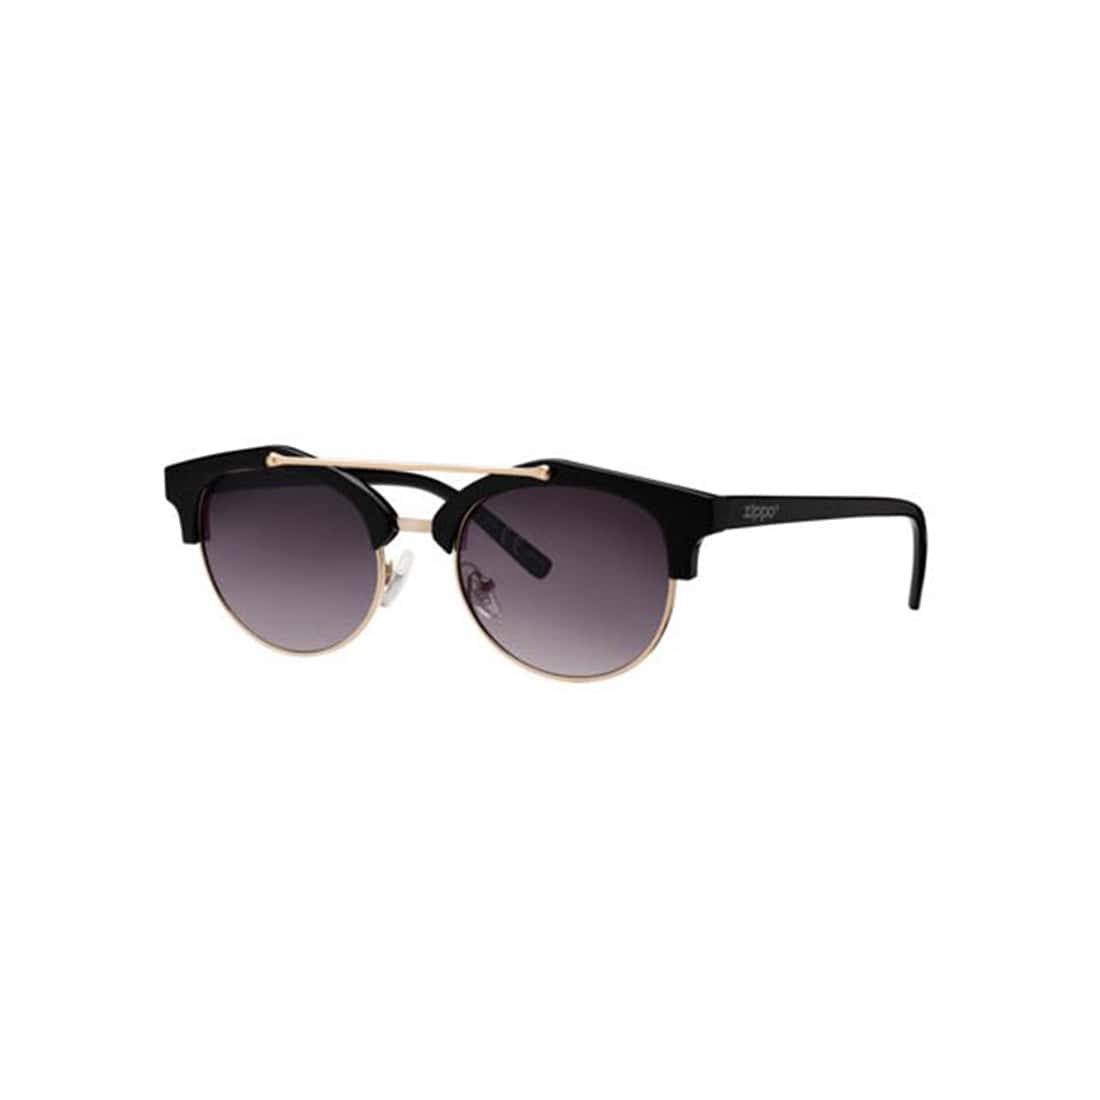 Zippo Sunglasses UV400 Lunettes De Soleil Homme Taille Unique Noir 